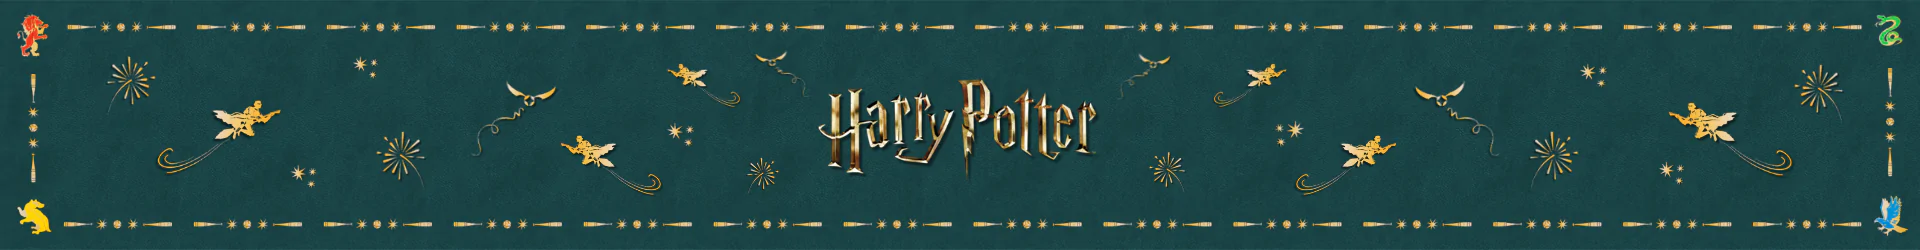 Harry Potter ékszerek banner